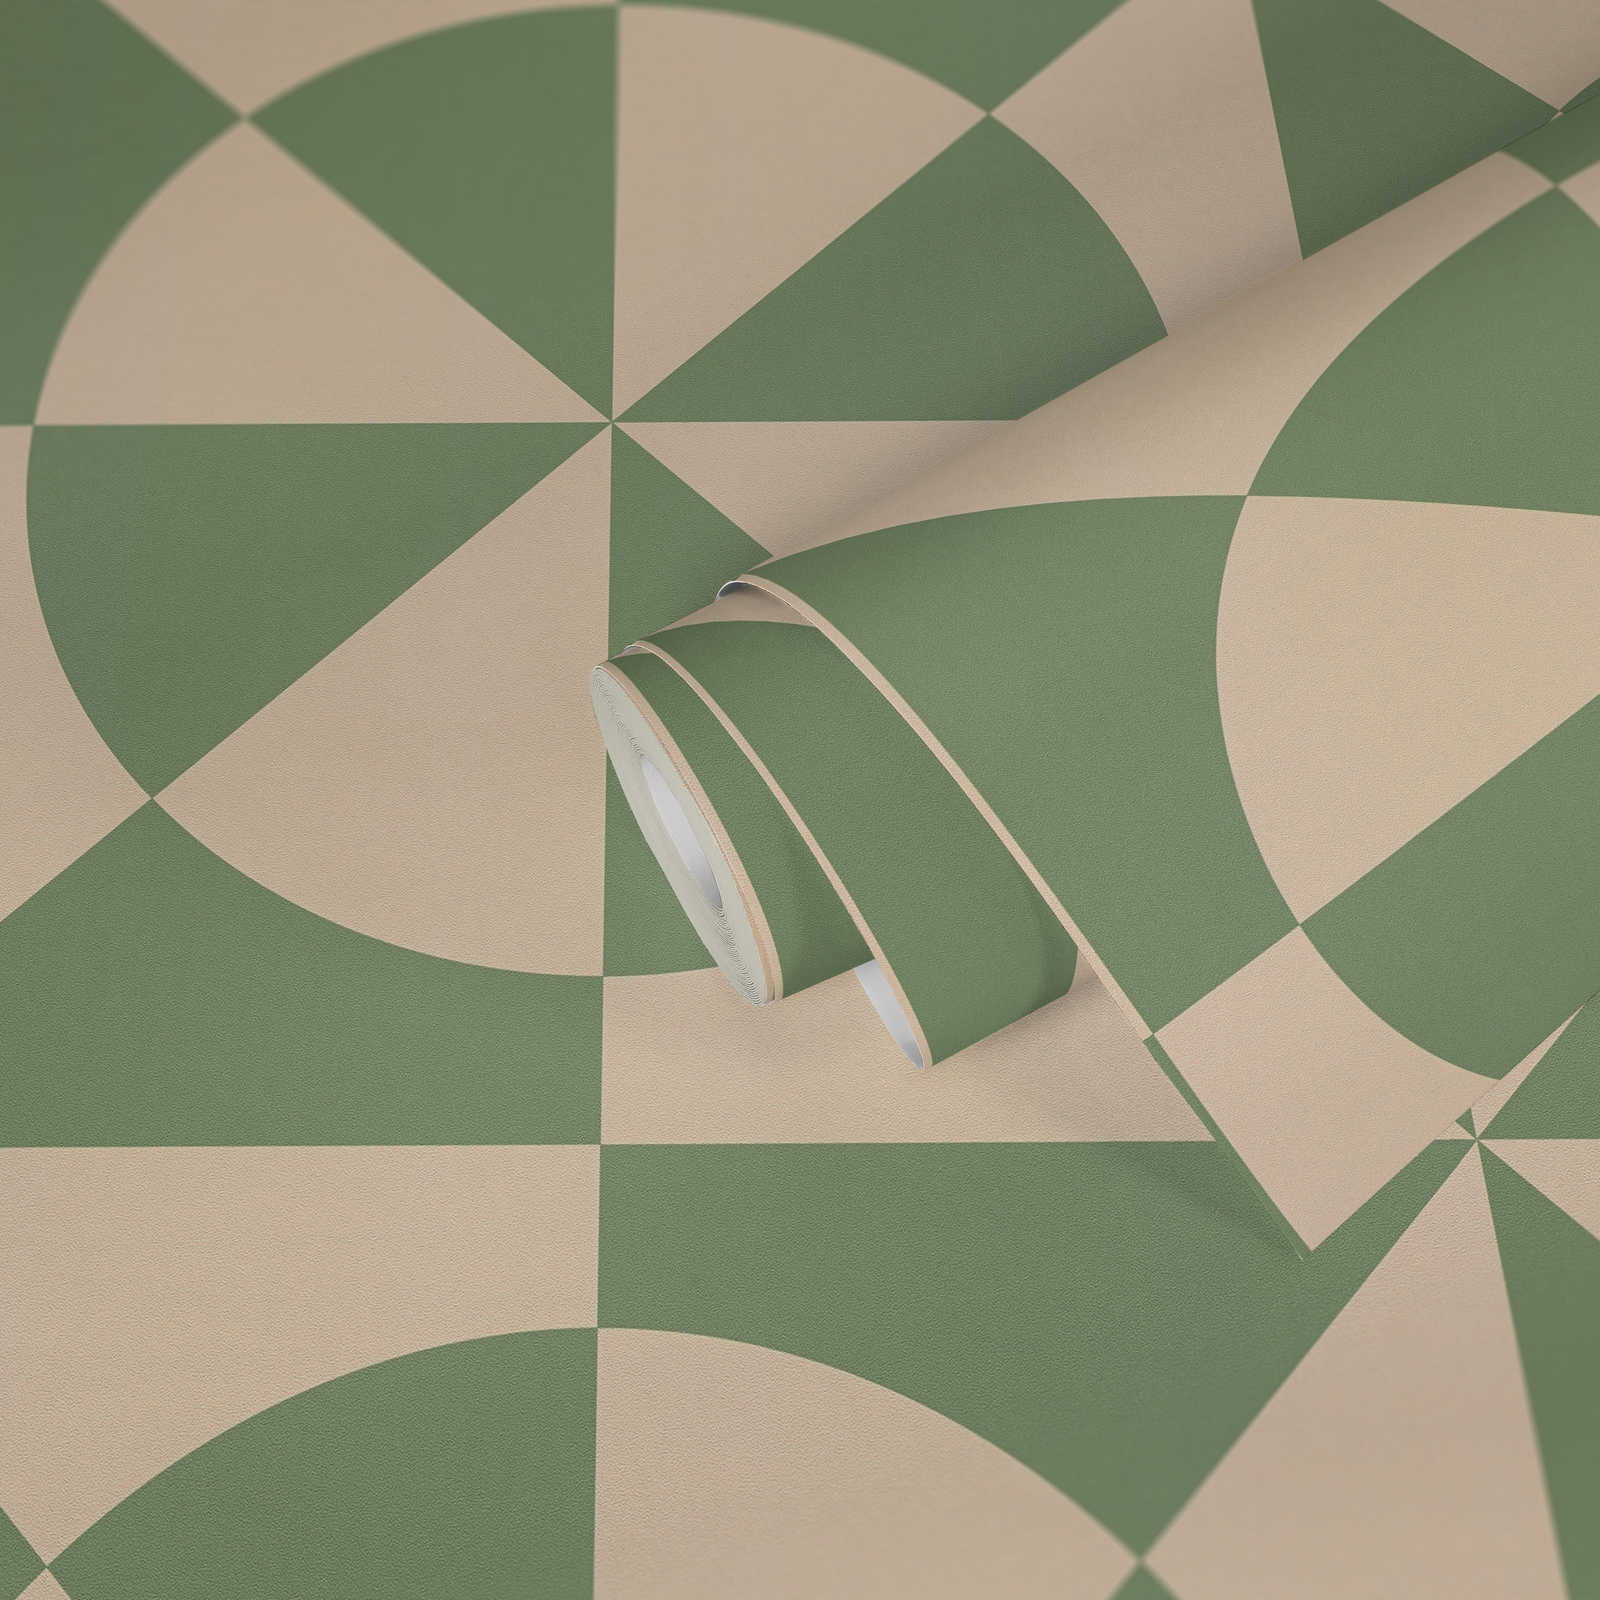             Papier peint intissé avec motifs circulaires & formes géométriques - beige, vert
        